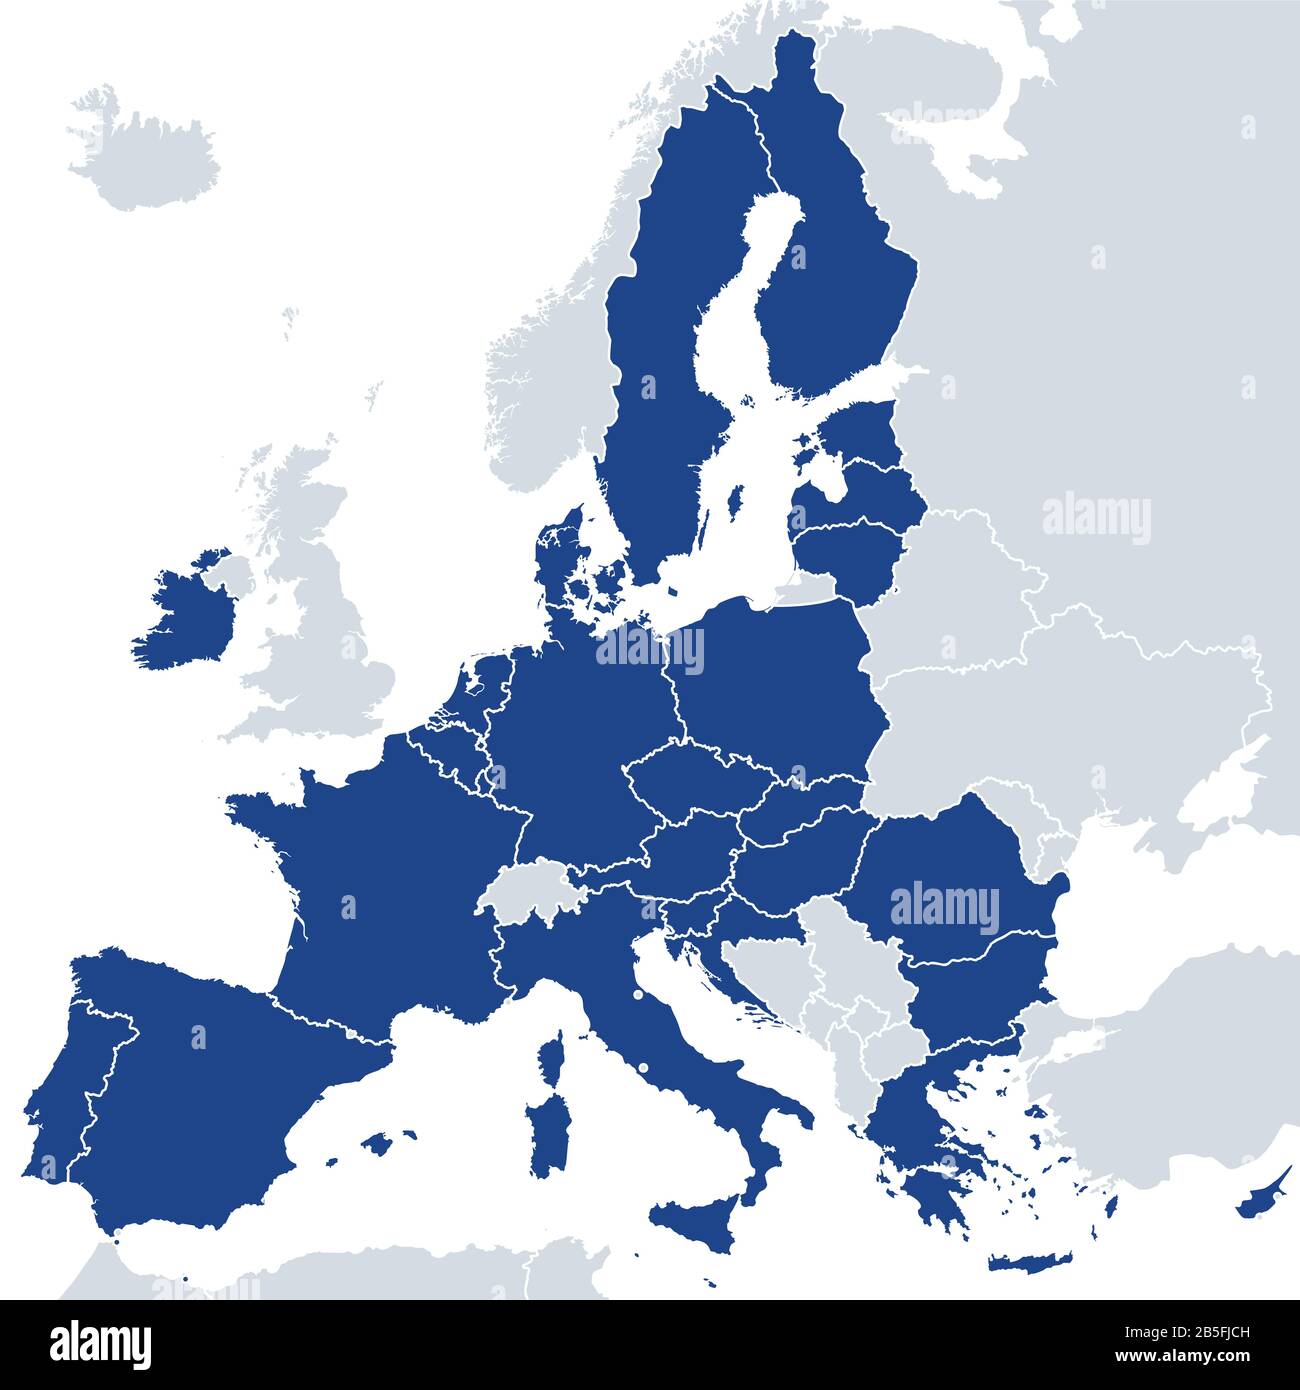 gli stati membri dell’Unione europea dopo la Brexit, carta politica. I 27 stati membri dell'UE, dopo la partenza del Regno Unito nel 2020. Foto Stock